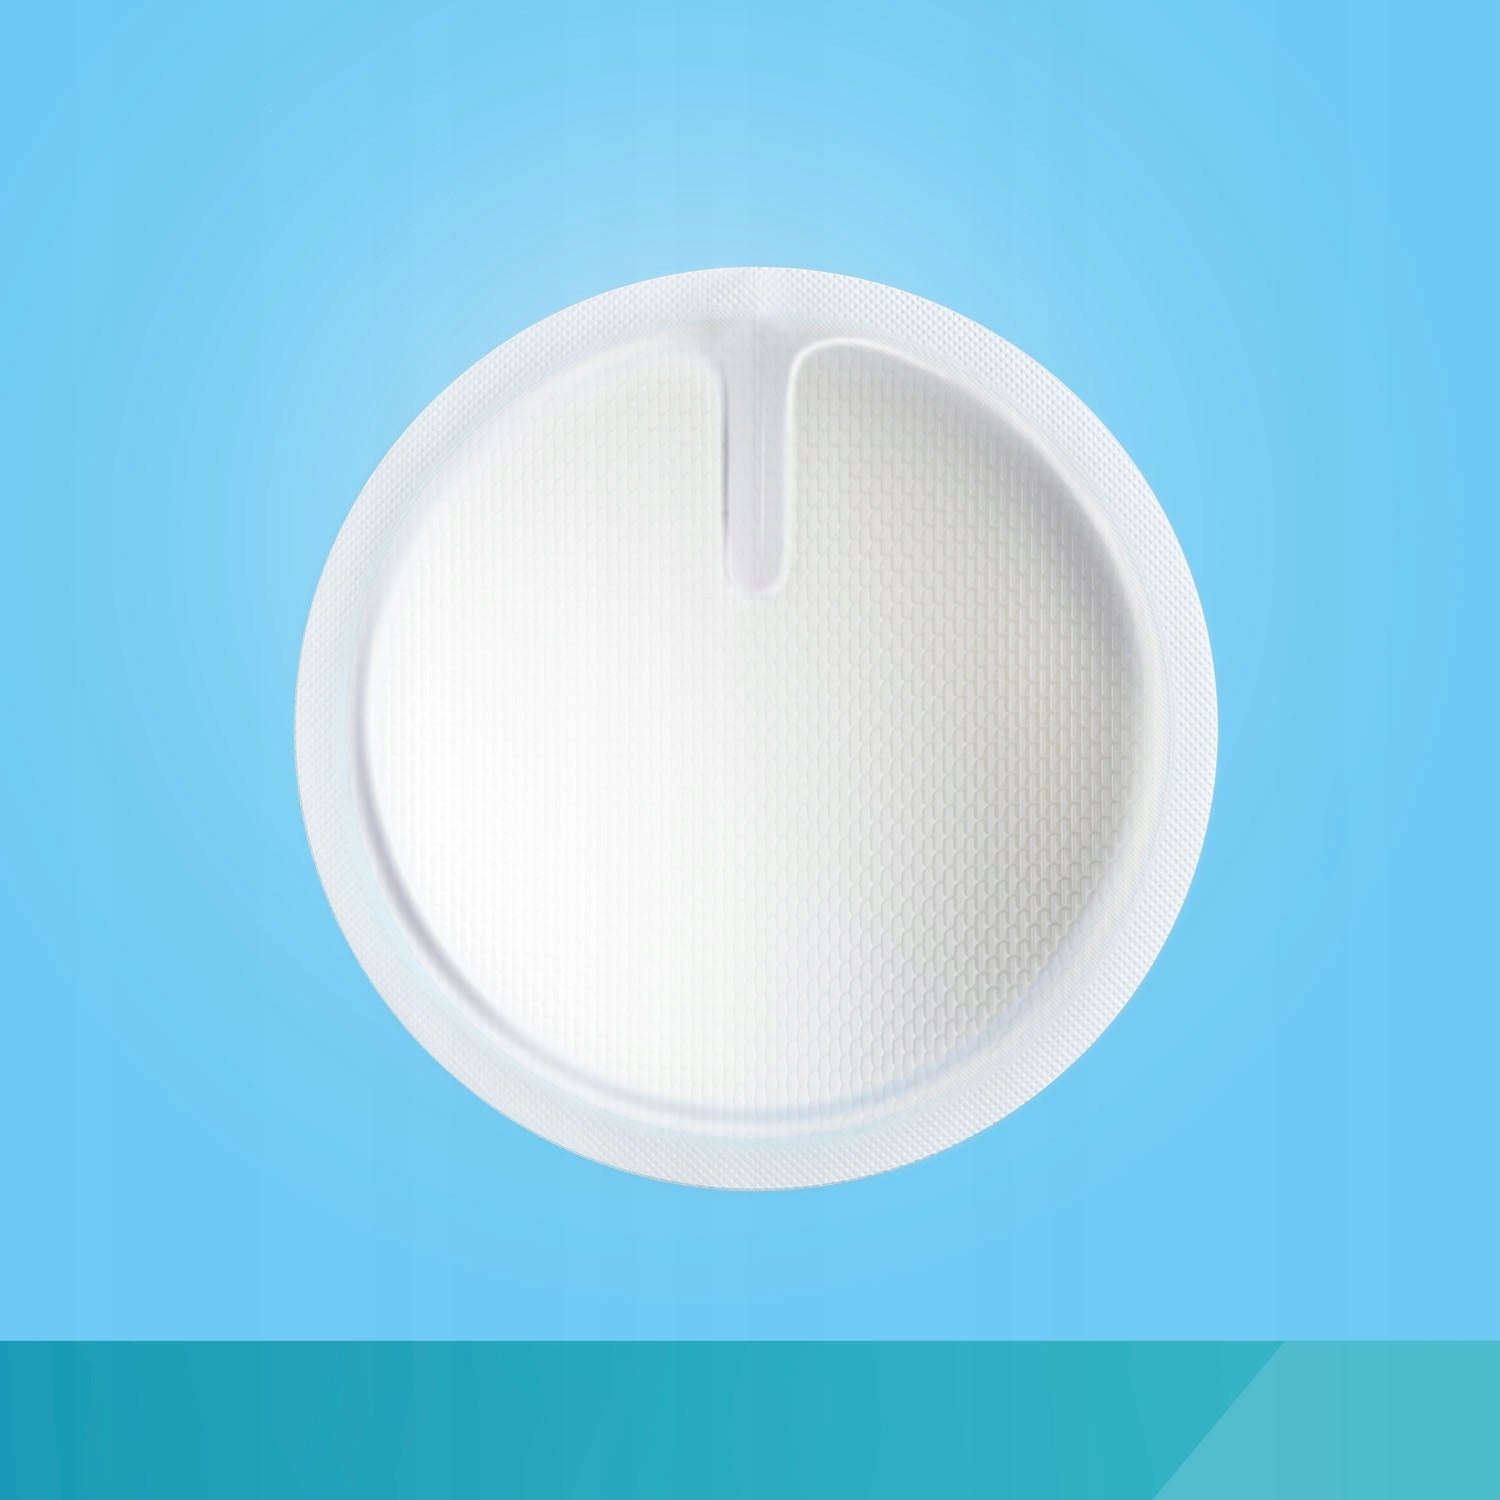 CANPOL BEBIES: transpirable ultra absorbente de lactancia 3D inserta 30 pcs.